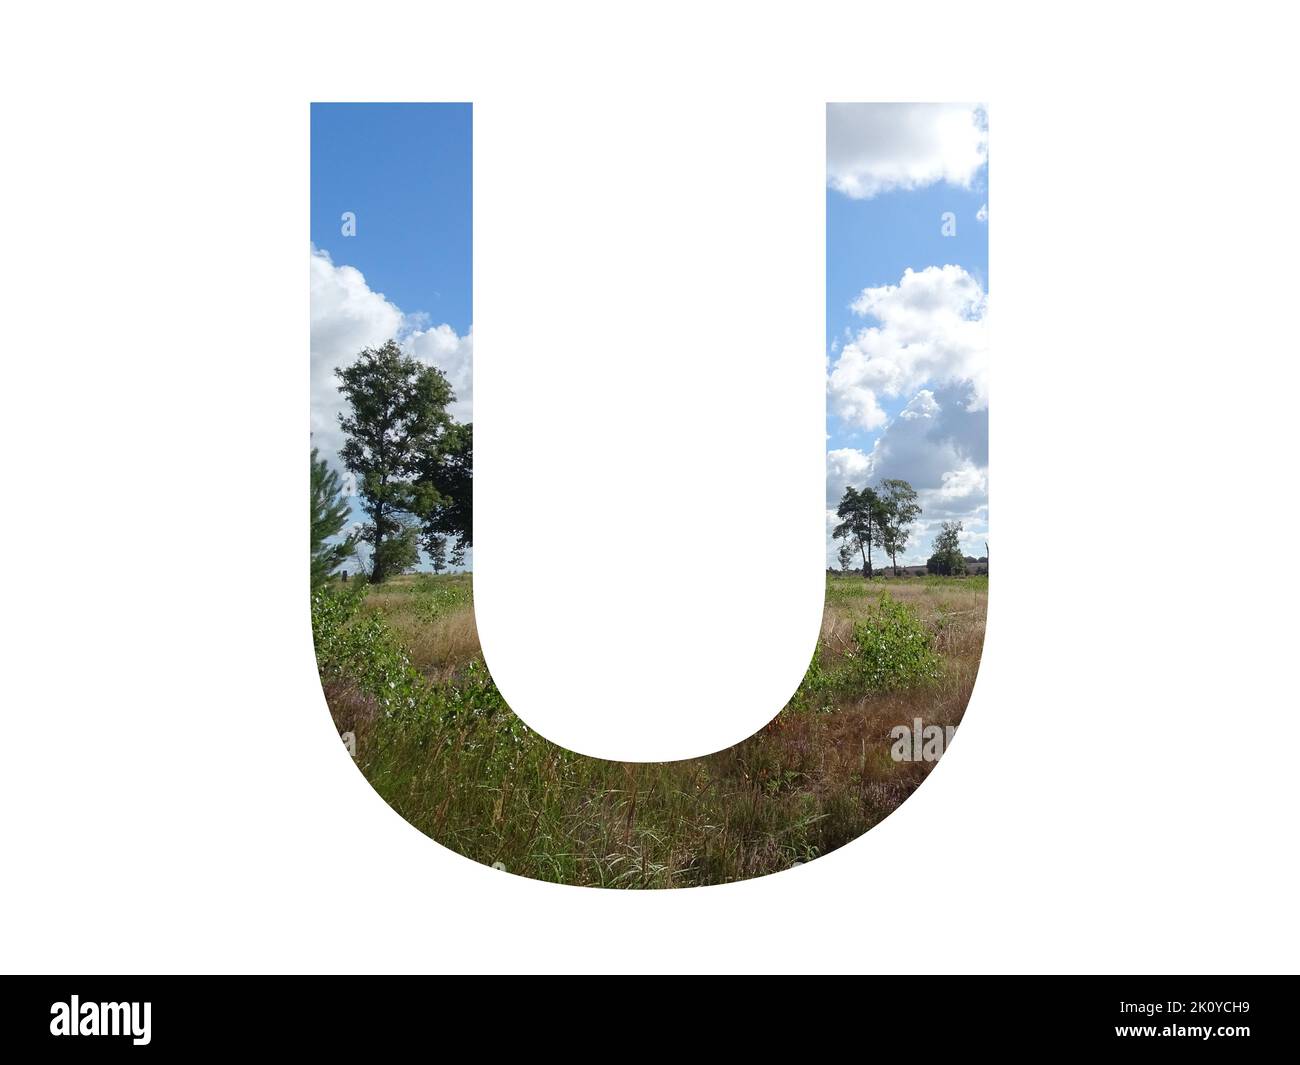 Lettera U dell'alfabeto fatta di paesaggio con nuvole, cielo azzurro, alberi, sole, erba e brughiera, con colori blu, bianco, verde, rosa e giallo Foto Stock